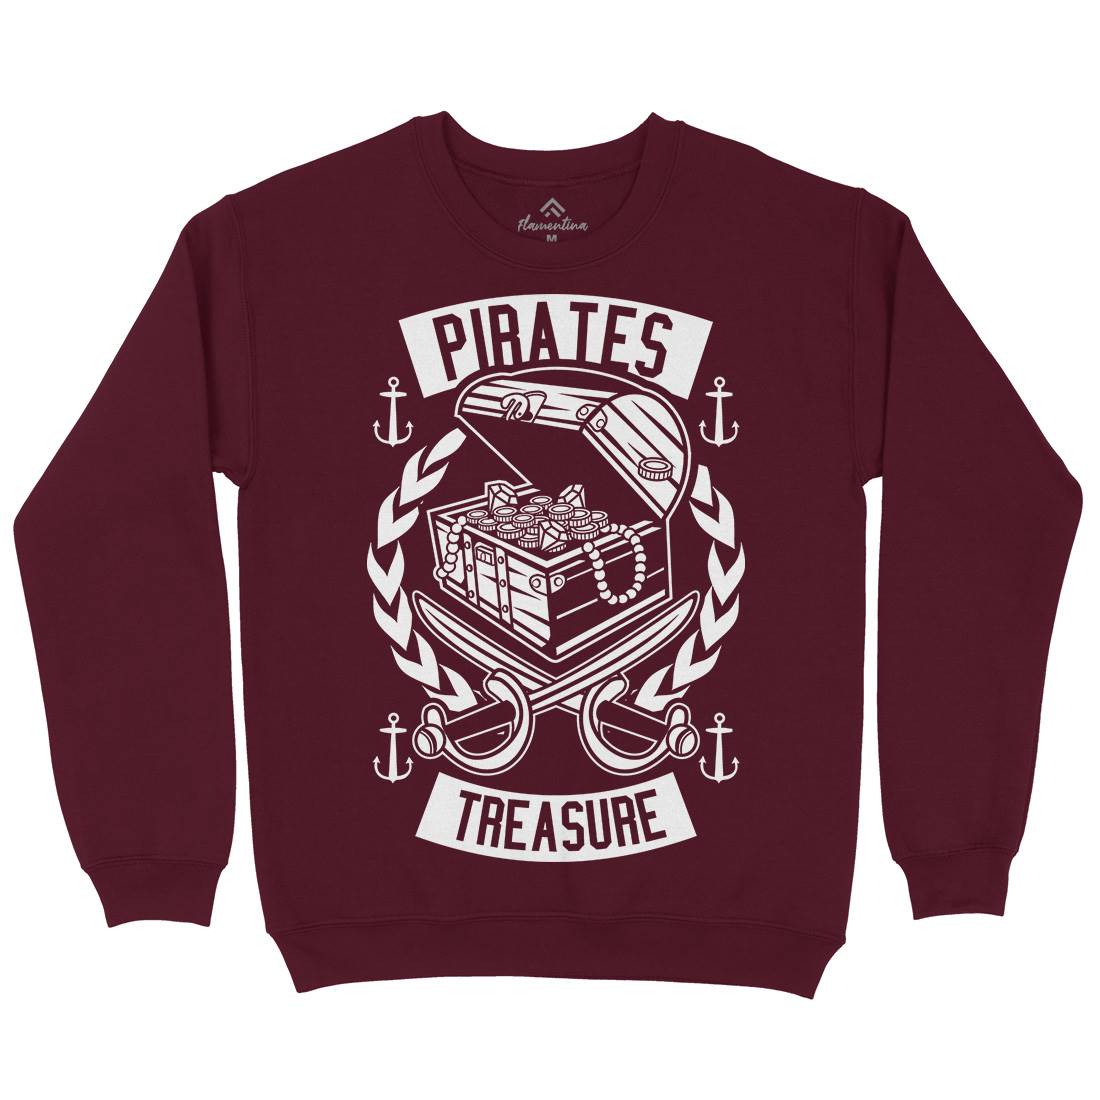 Pirates Treasure Kids Crew Neck Sweatshirt Navy B600